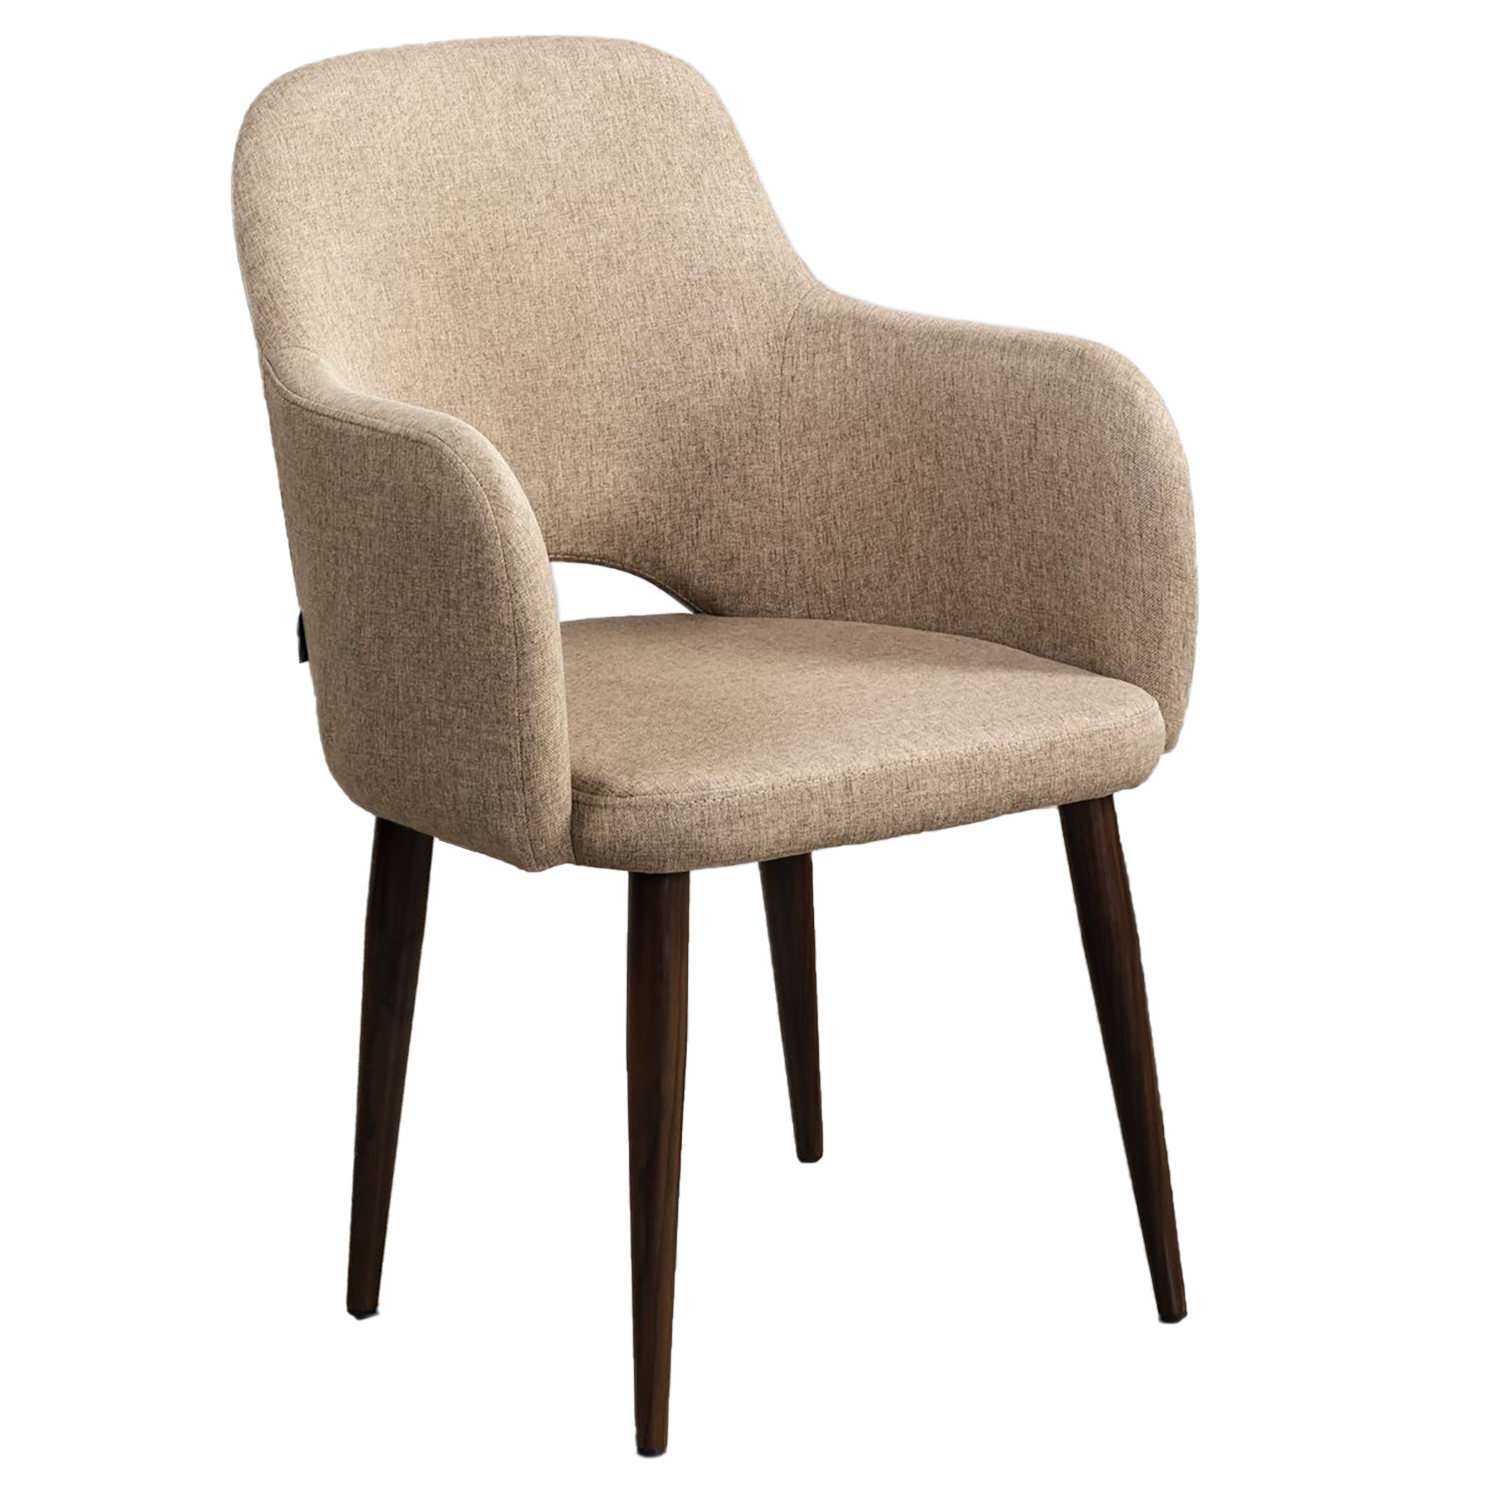 Кресло R-Home Ledger  Сканди, размер 56.5x60.5x87.5 см, цвет: Браун Темный Орех(41012440_БраунТОрех)41012440_БраунТОрех